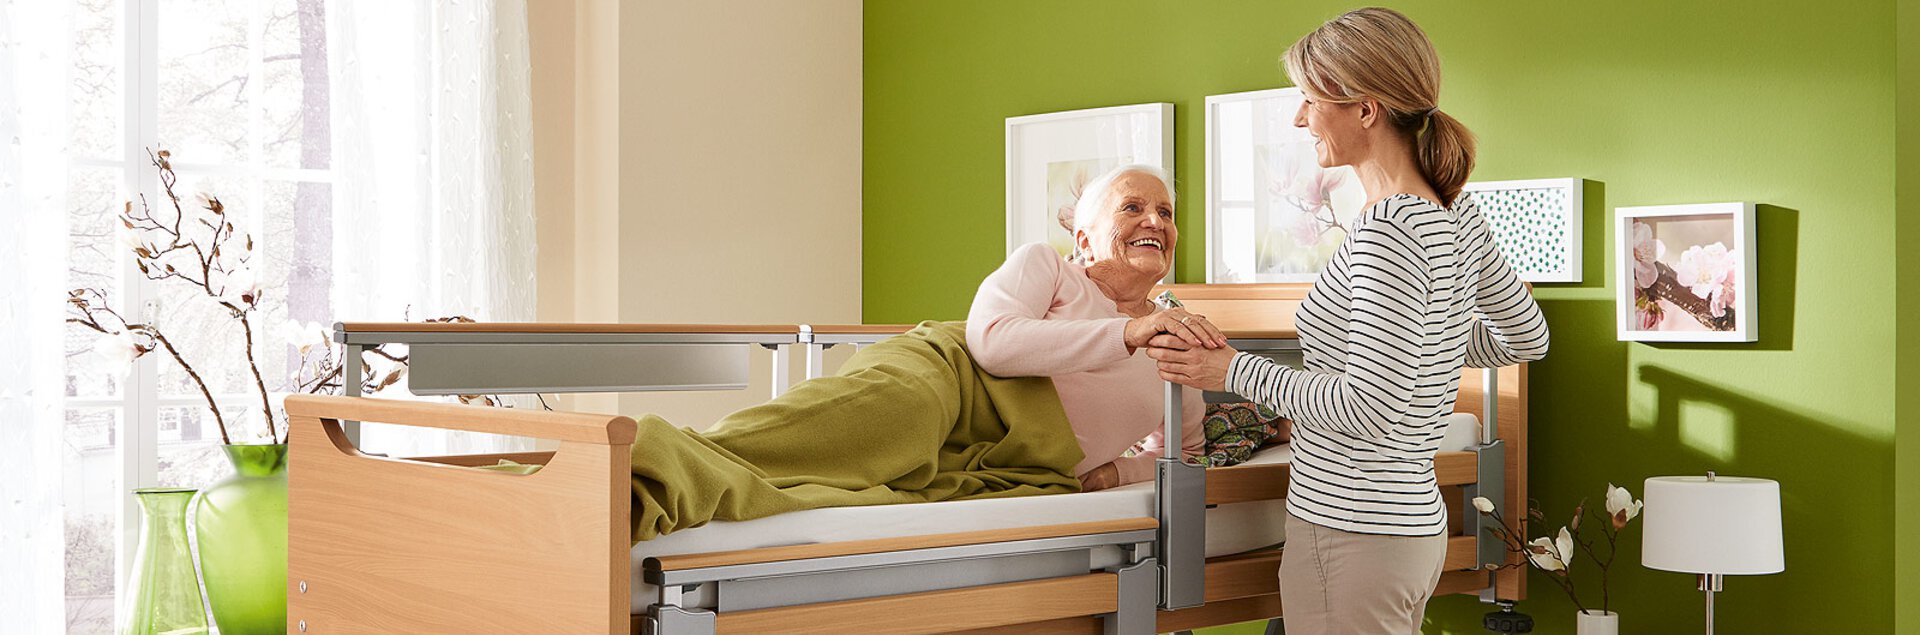 Pflegebett mit Pflegebettmatratze | © Pohlig GmbH